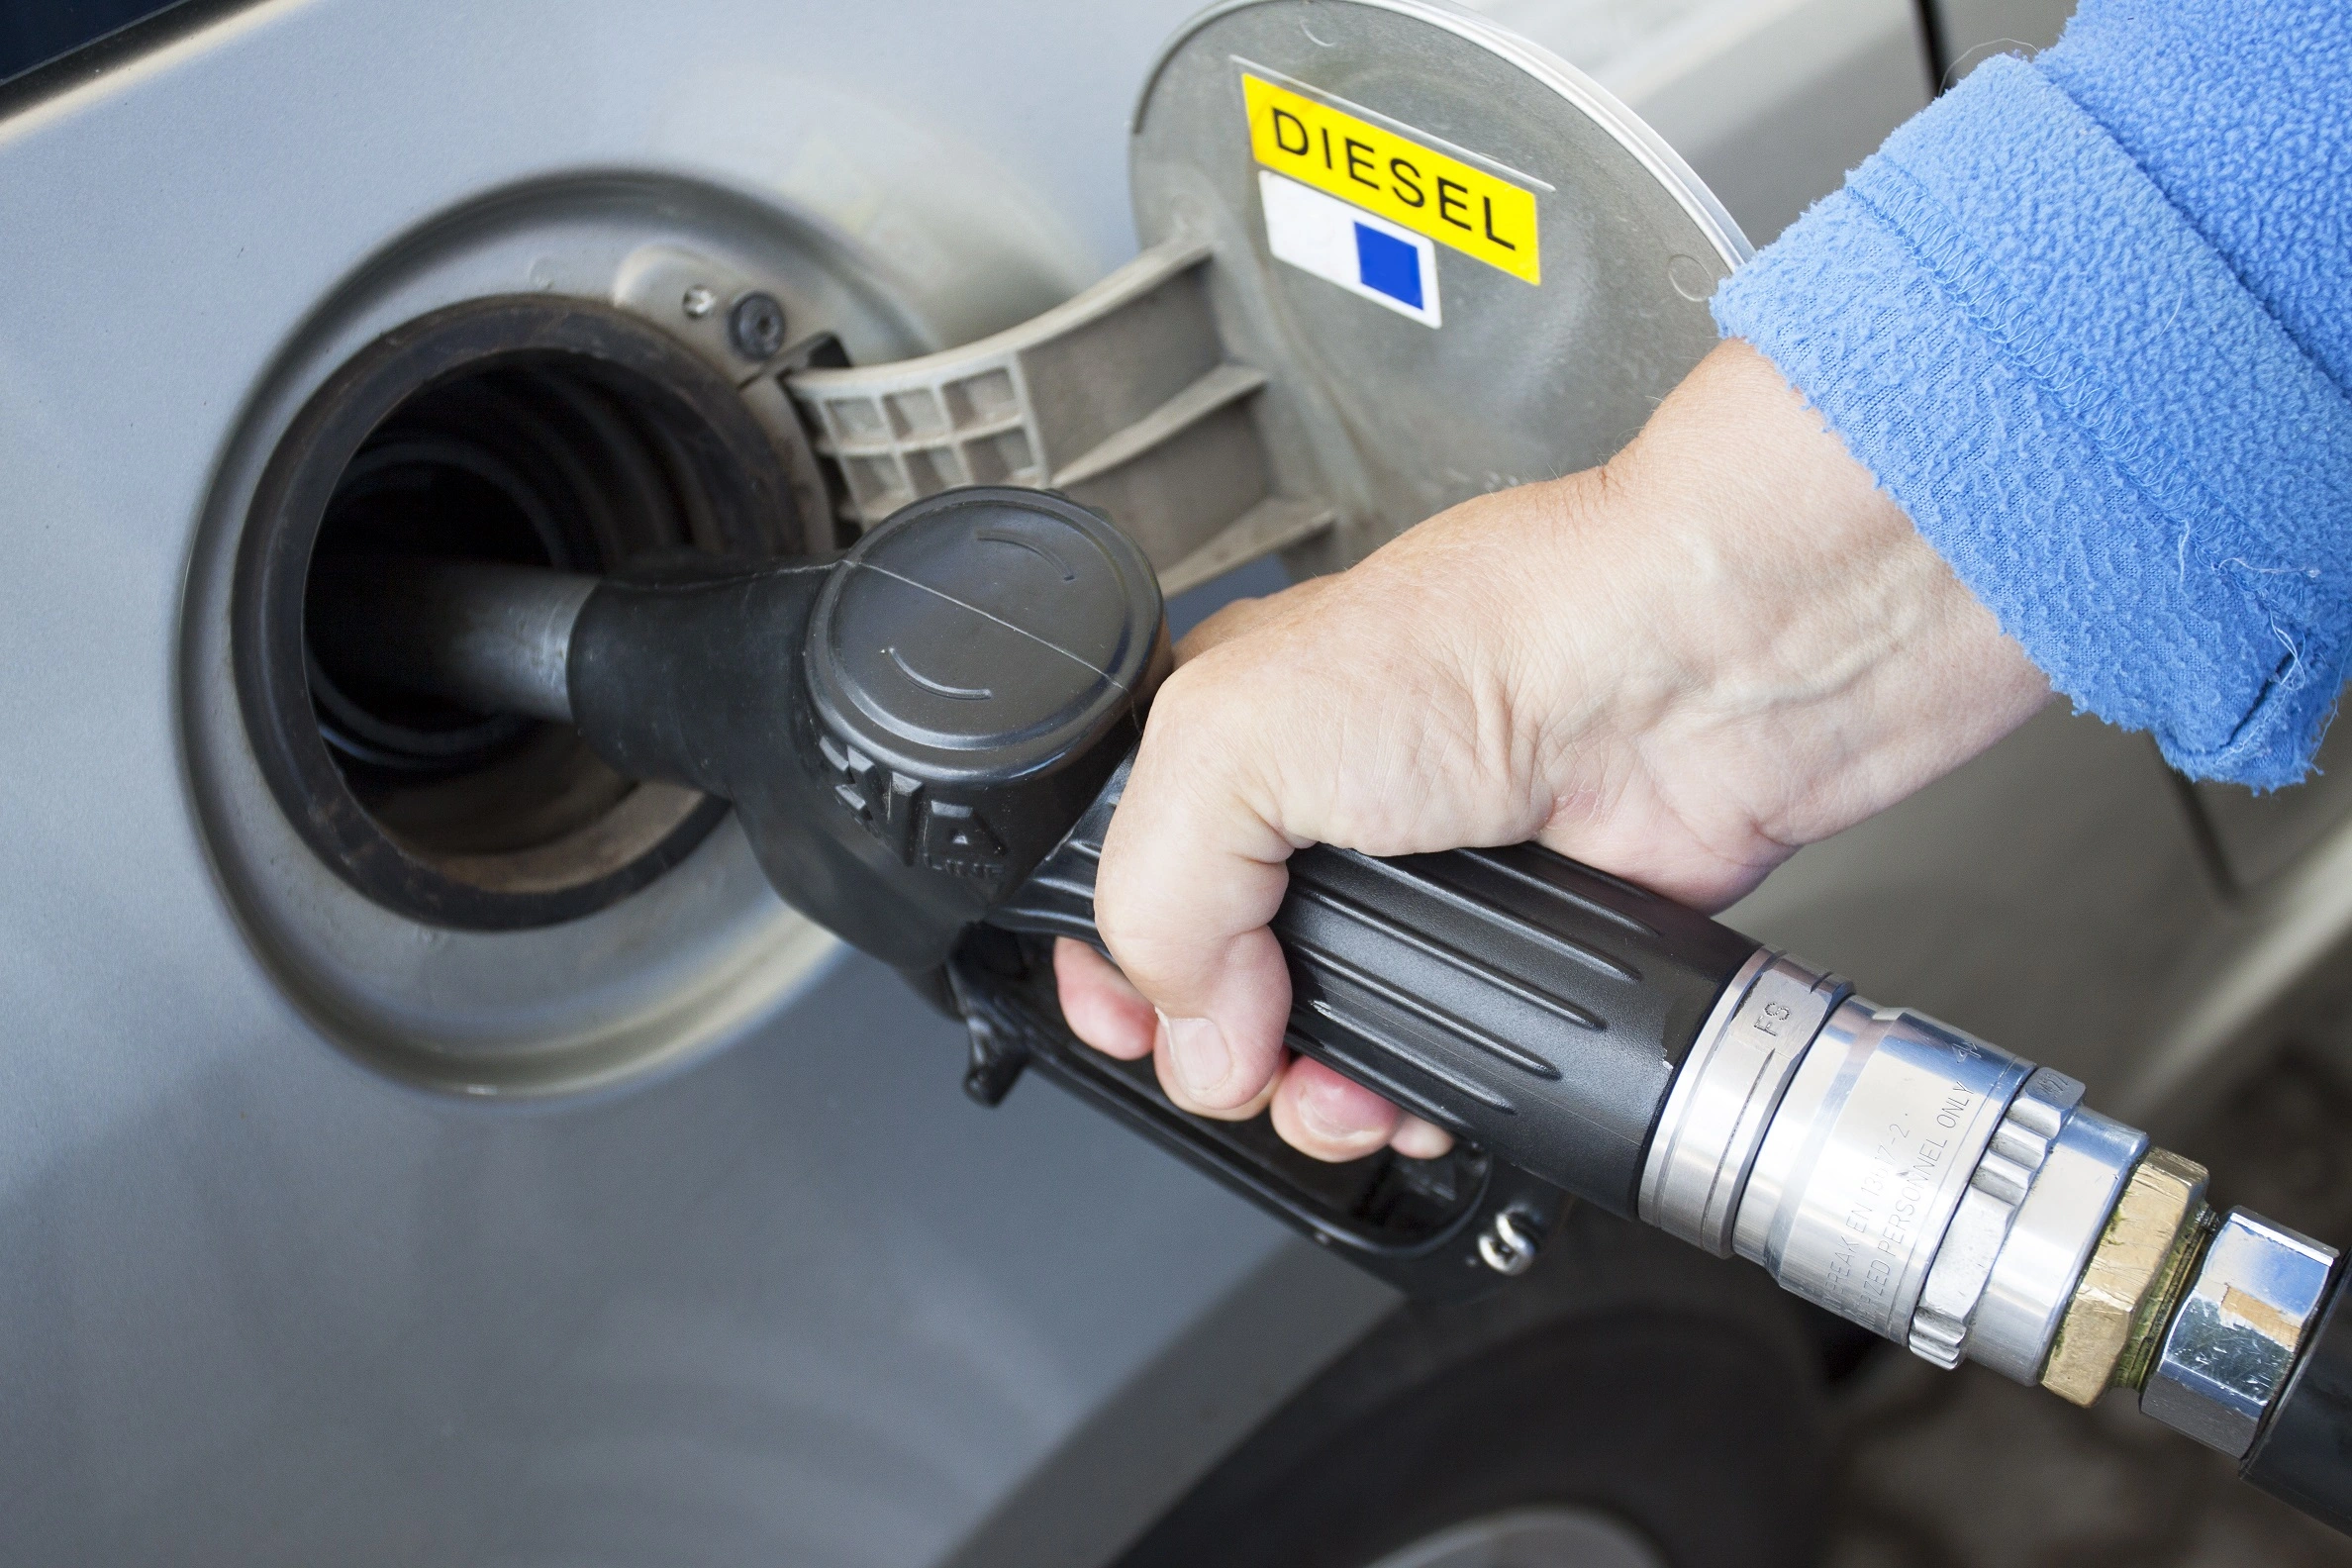 Pouring Diesel in Car’s Diesel Tank